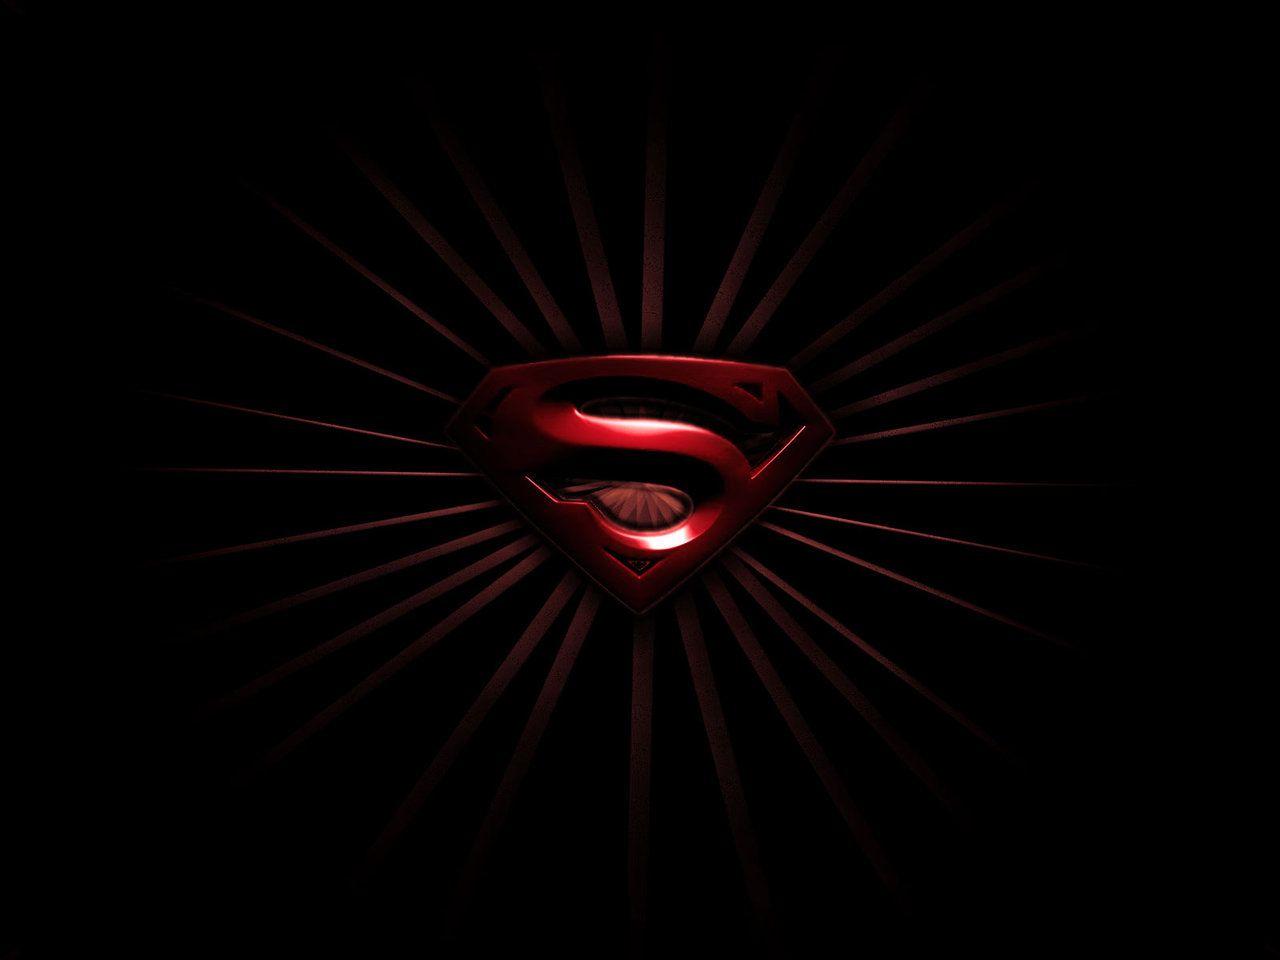 Dark Superman Logo - Black Superman Logo Wallpaper - WallpaperSafari